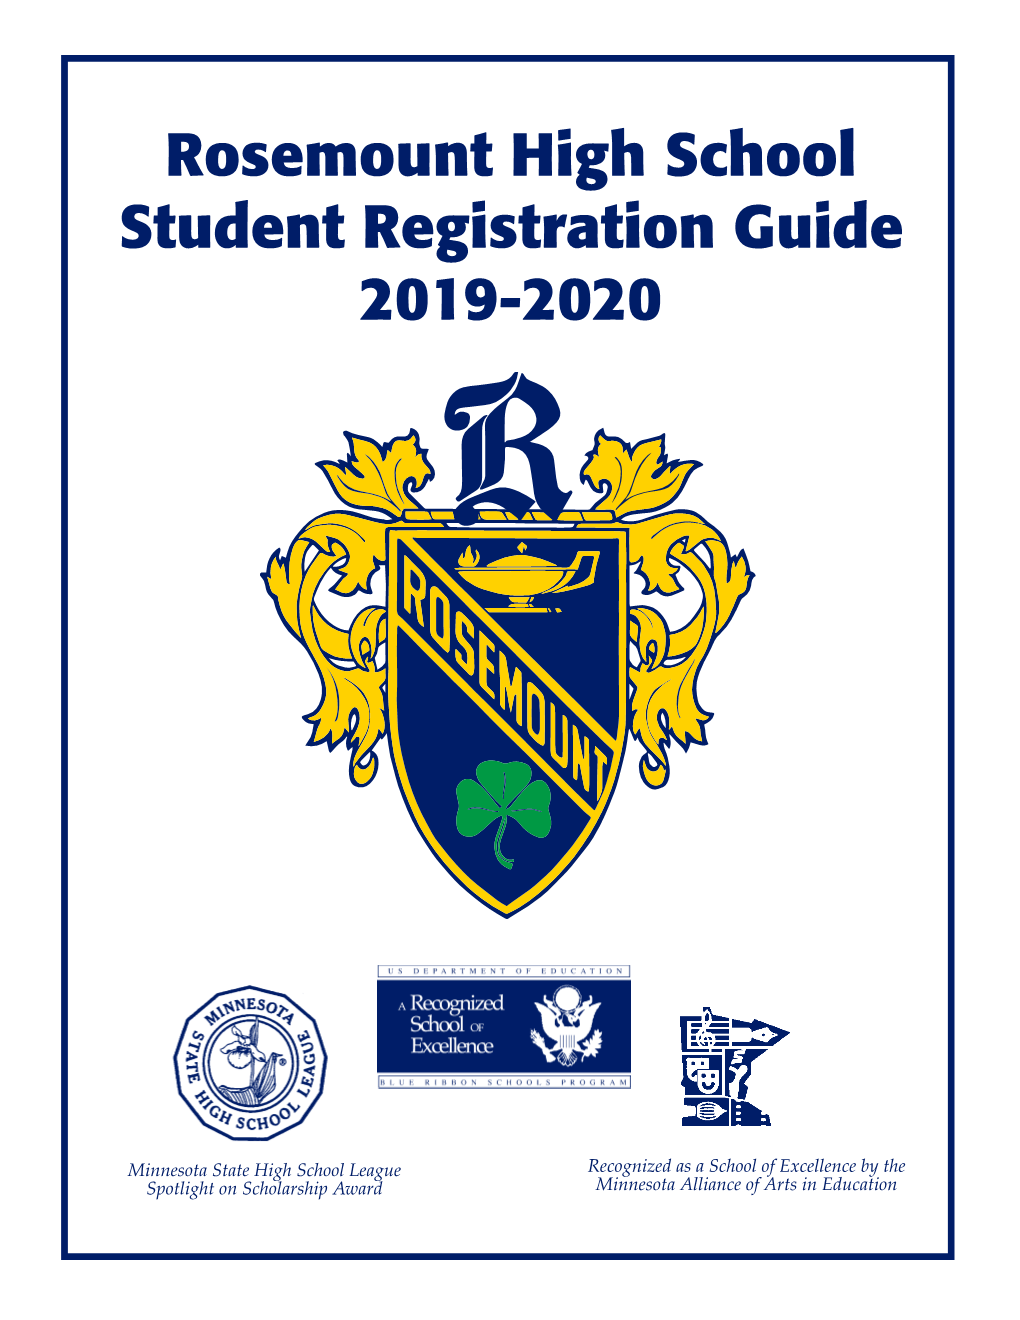 Rosemount High School Student Registration Guide 2019-2020